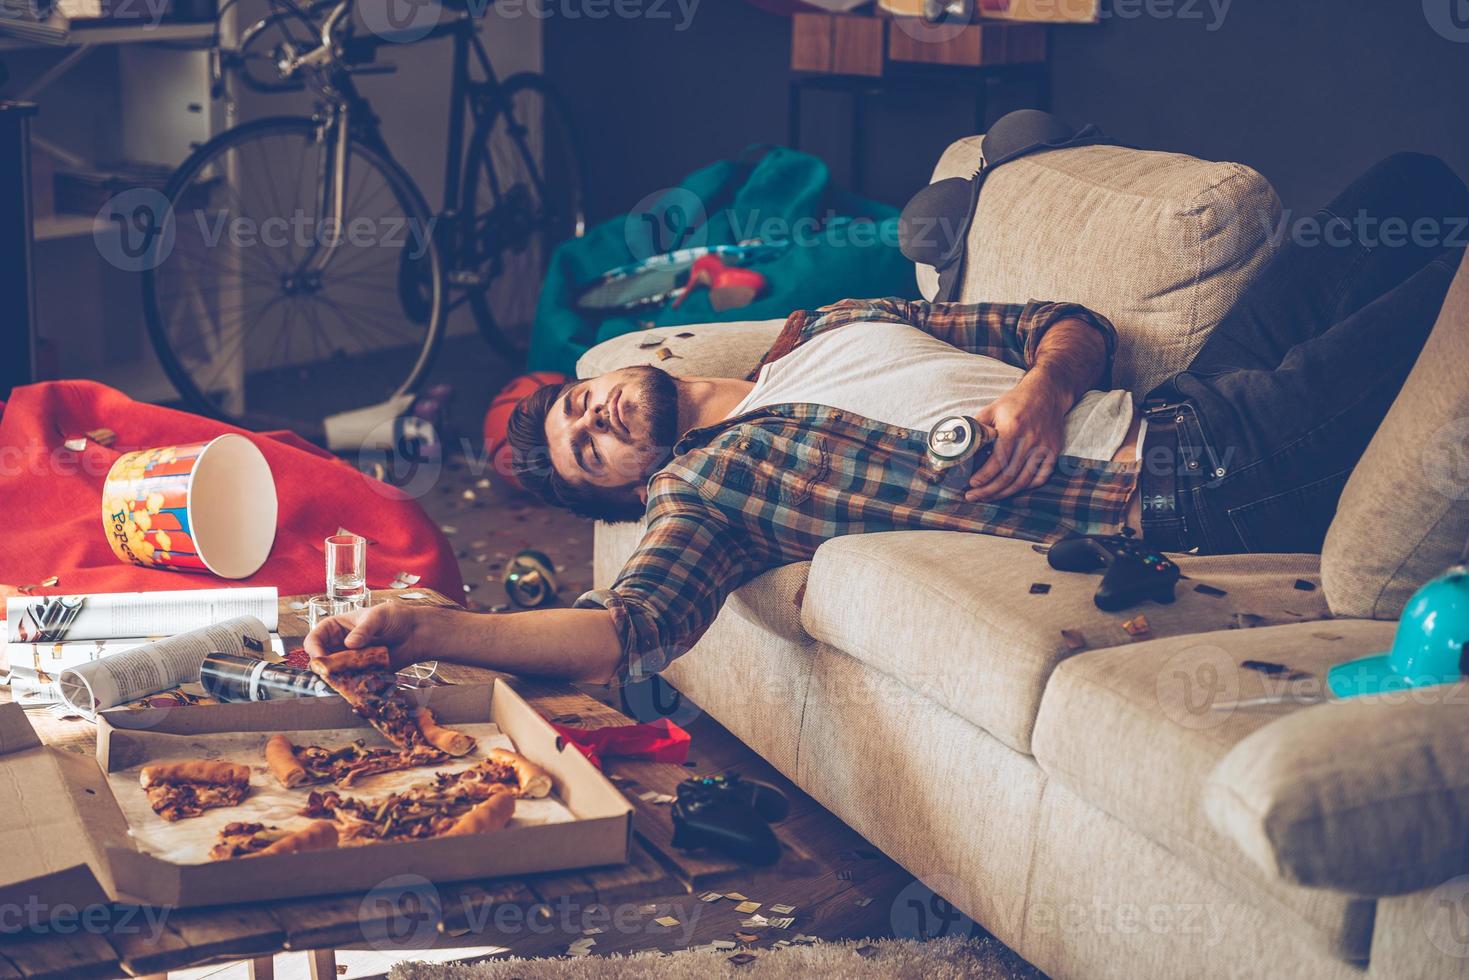 ele tinha muita cerveja. jovem bonito desmaiou no sofá com uma fatia de pizza e lata de cerveja na mão no quarto bagunçado depois da festa foto